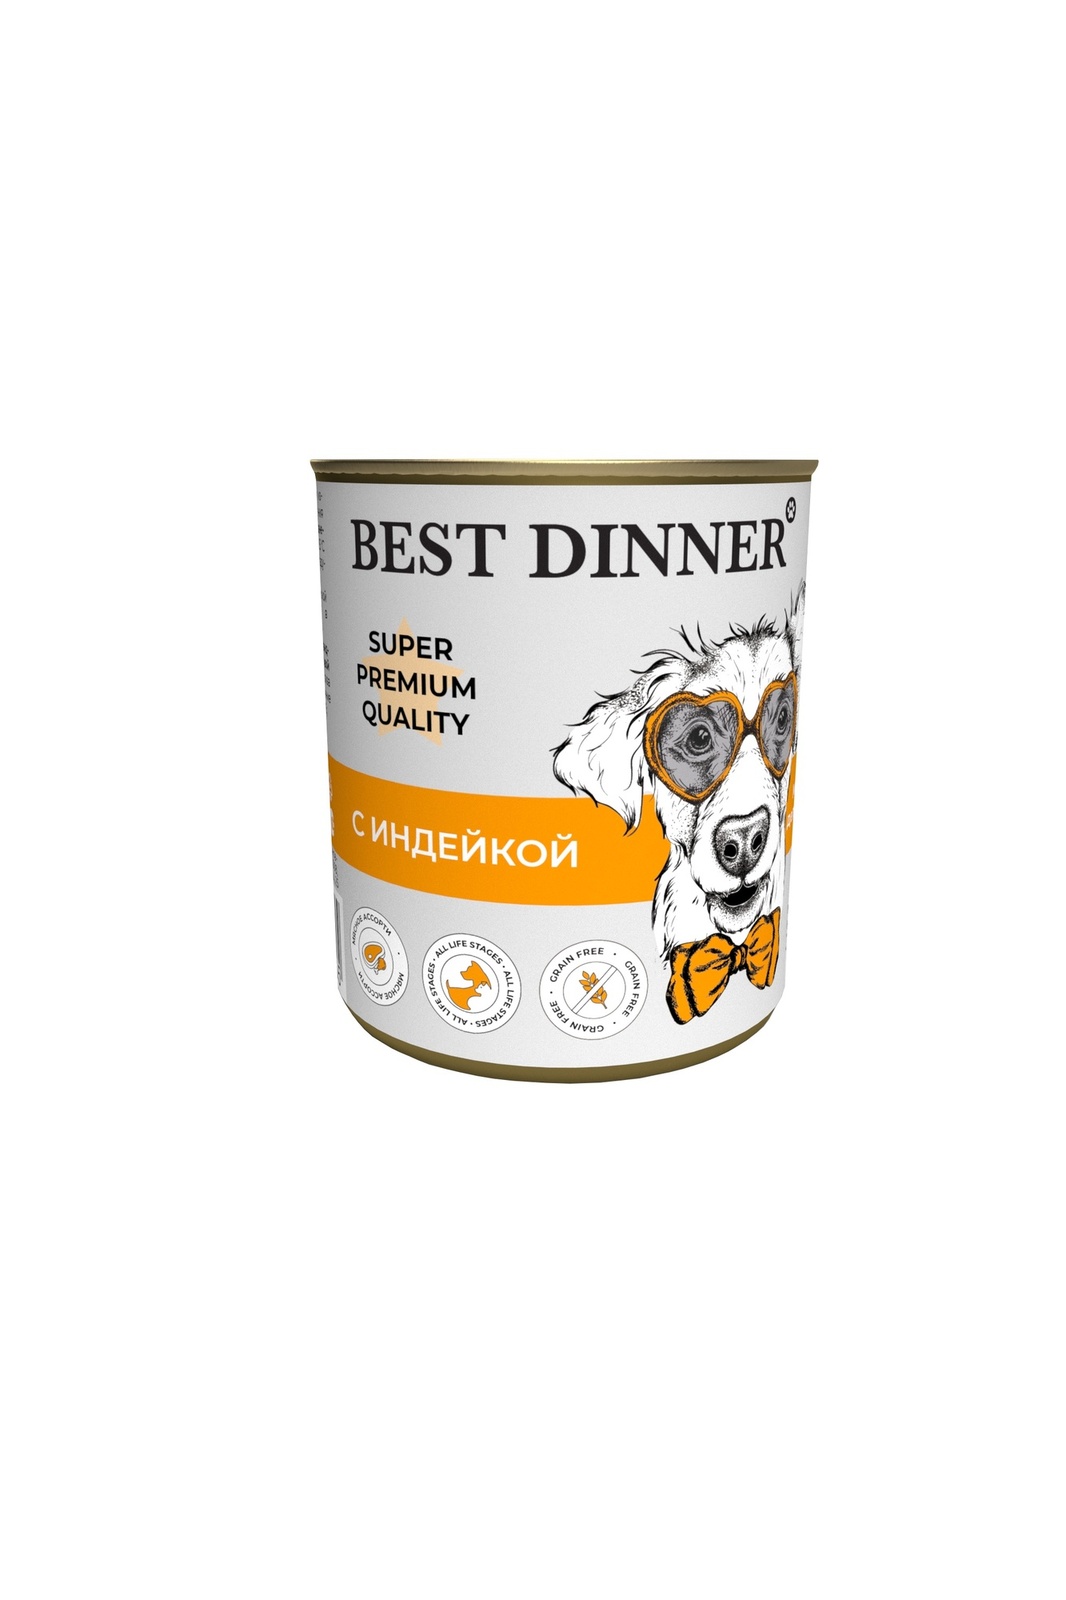 Best Dinner Best Dinner консервы для собак Super Premium С индейкой (340 г) best dinner best dinner гипоаллергенные консервы с кониной и рисом для собак всех пород 340 г